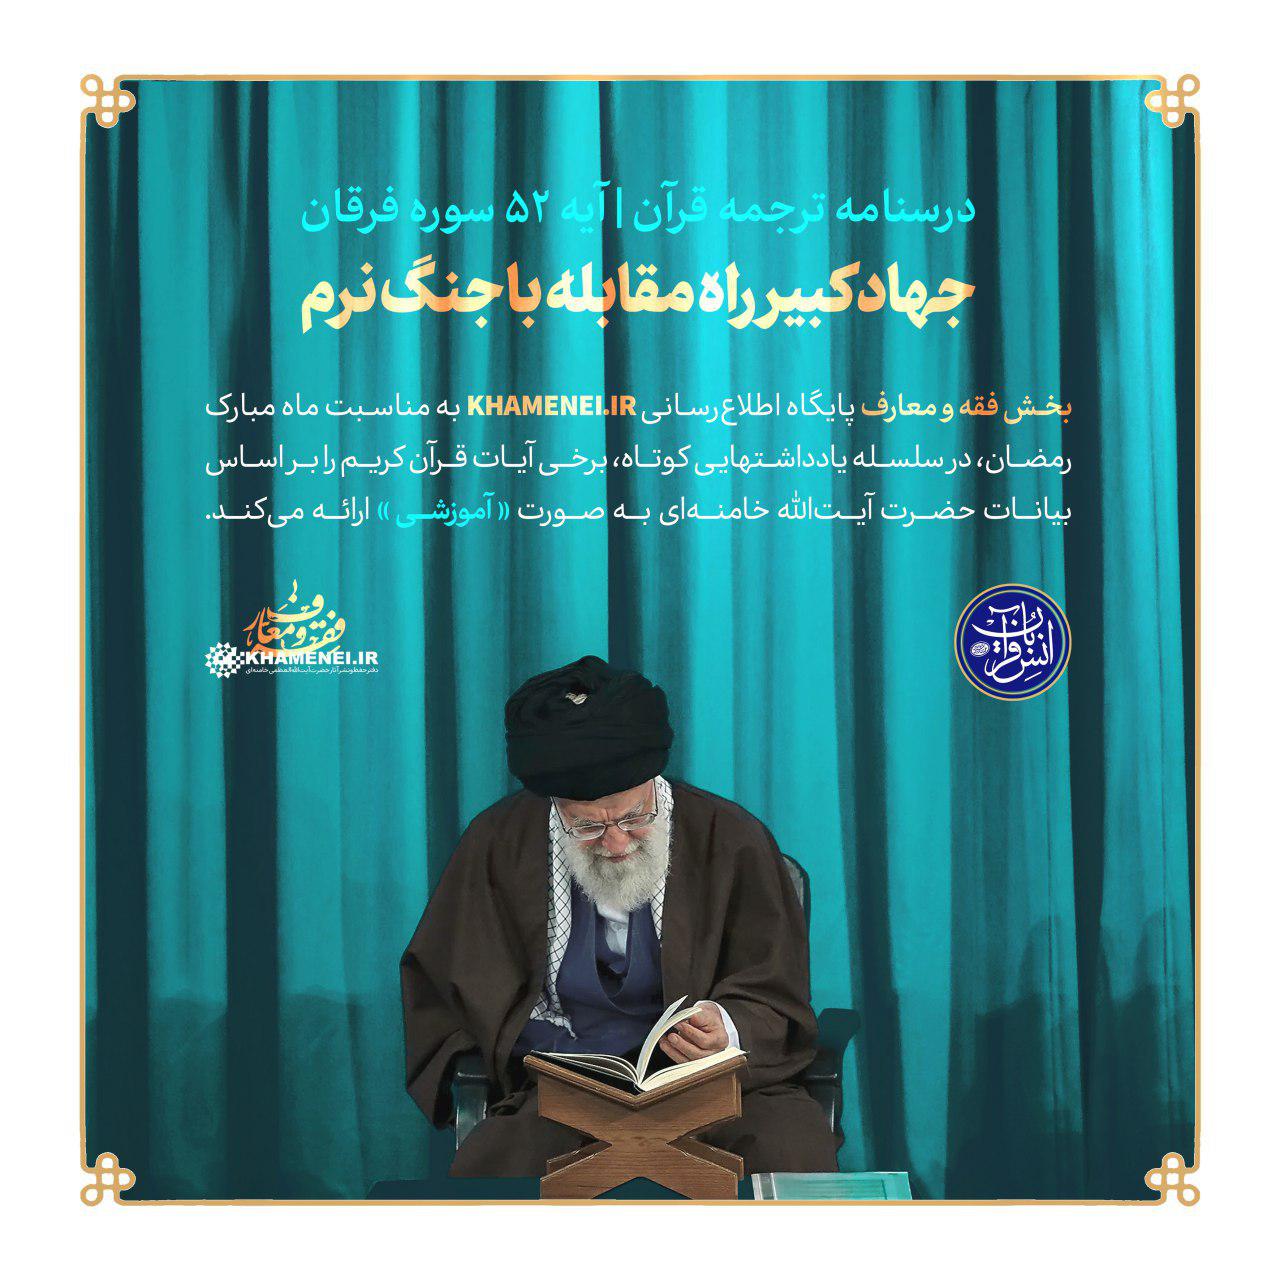 http://farsi.khamenei.ir/ndata/news/42674/photo_2019-05-28_16-49-13.jpg